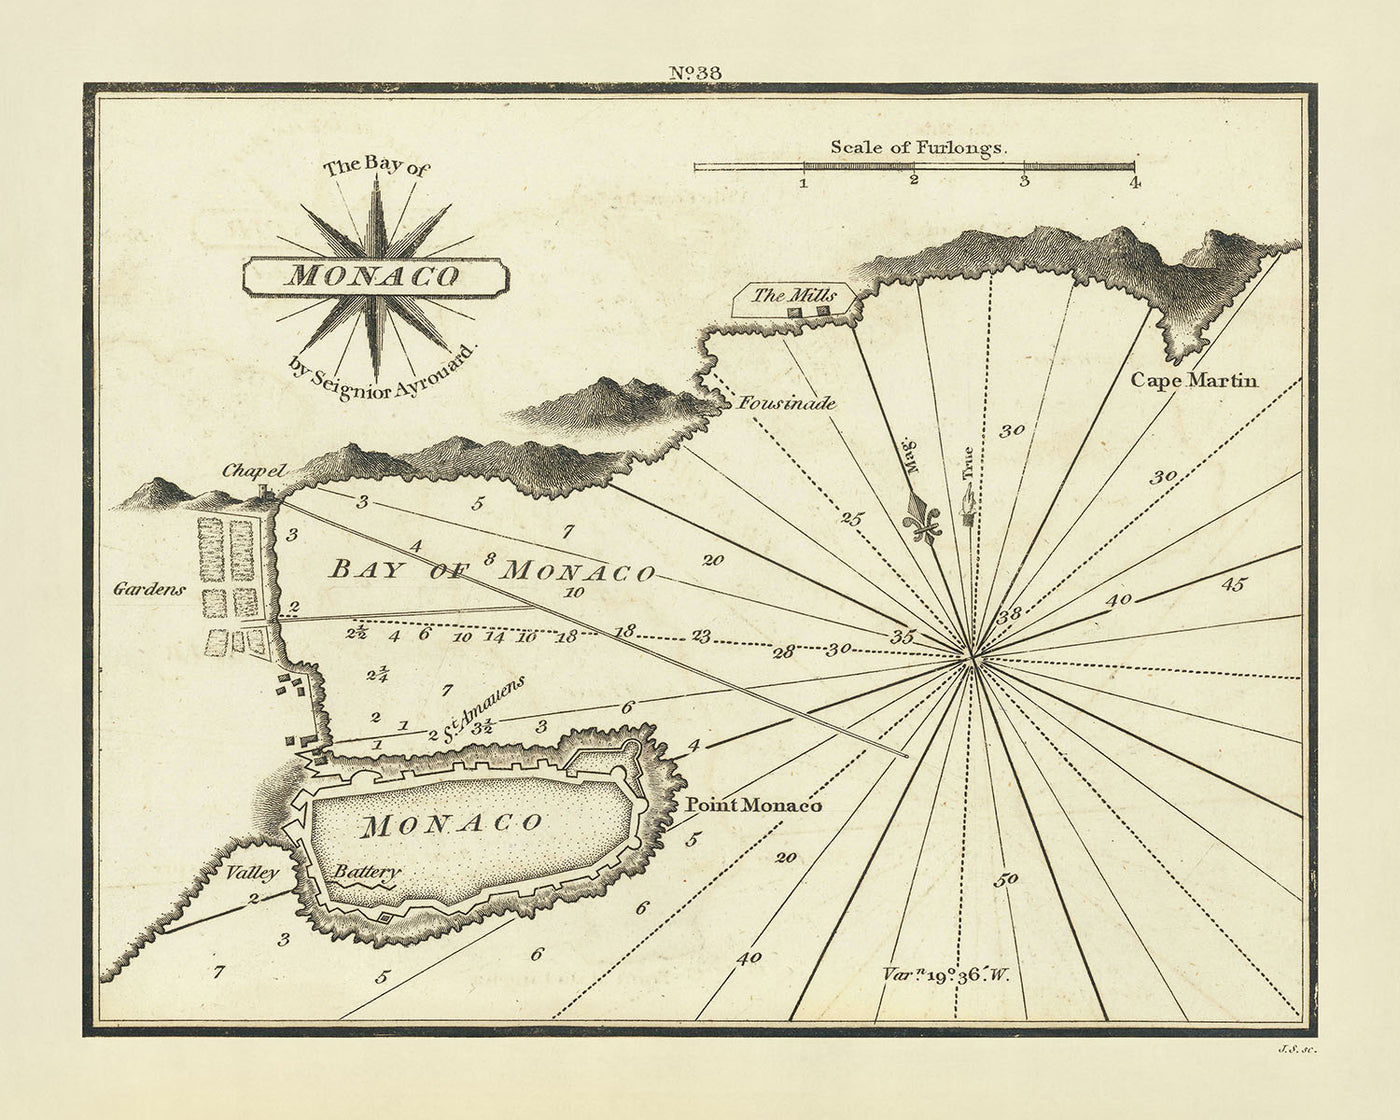 Carte nautique de l'ancienne Monaco par Heather, 1802 : Citadelle, Fortifications, Sondages